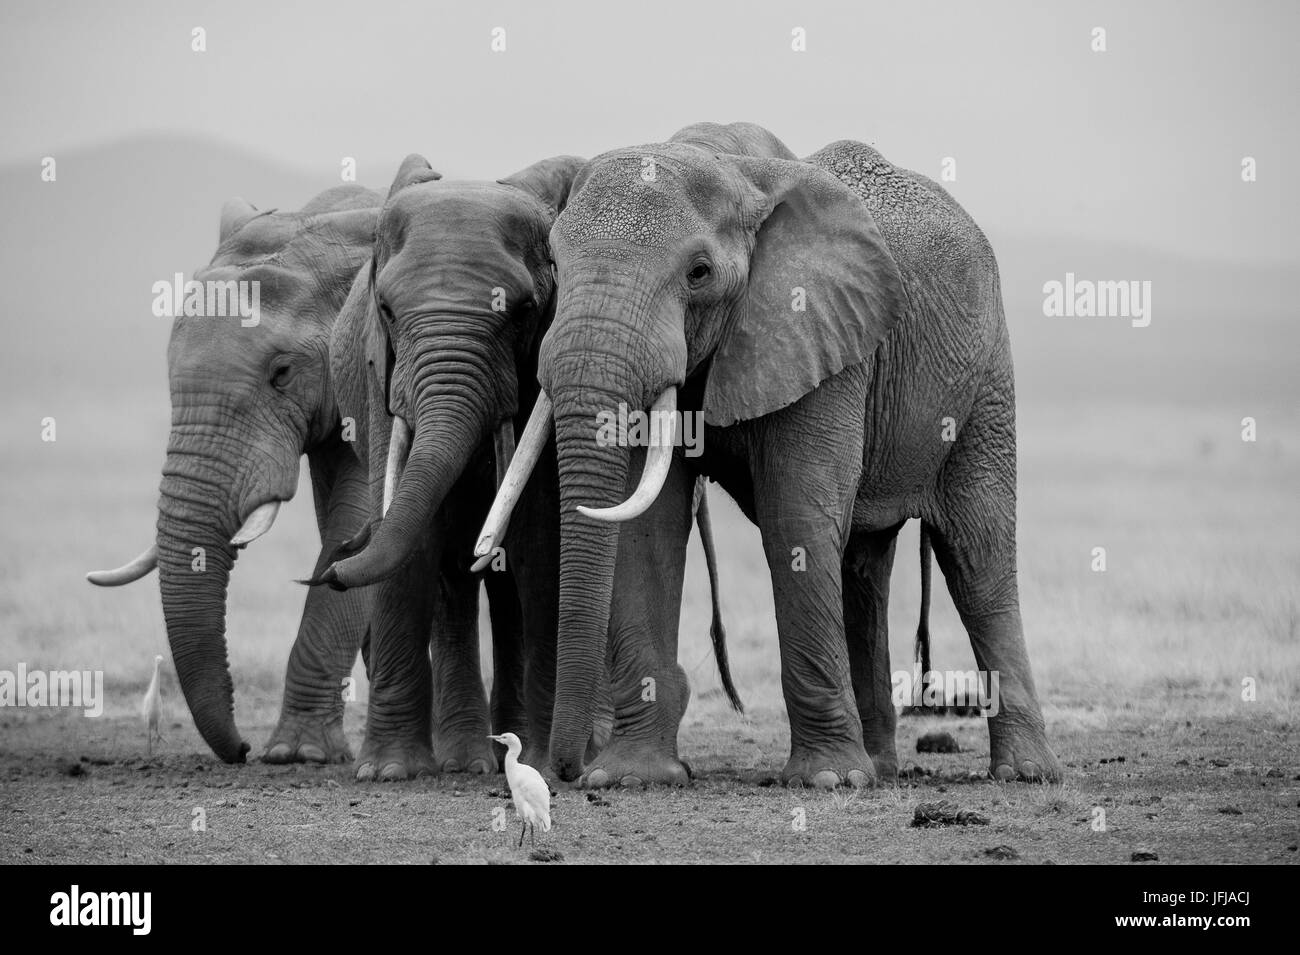 Le parc d'Amboseli, Kenya, Afrique trois éléphants pris dans le lac du parc Amboseli Banque D'Images